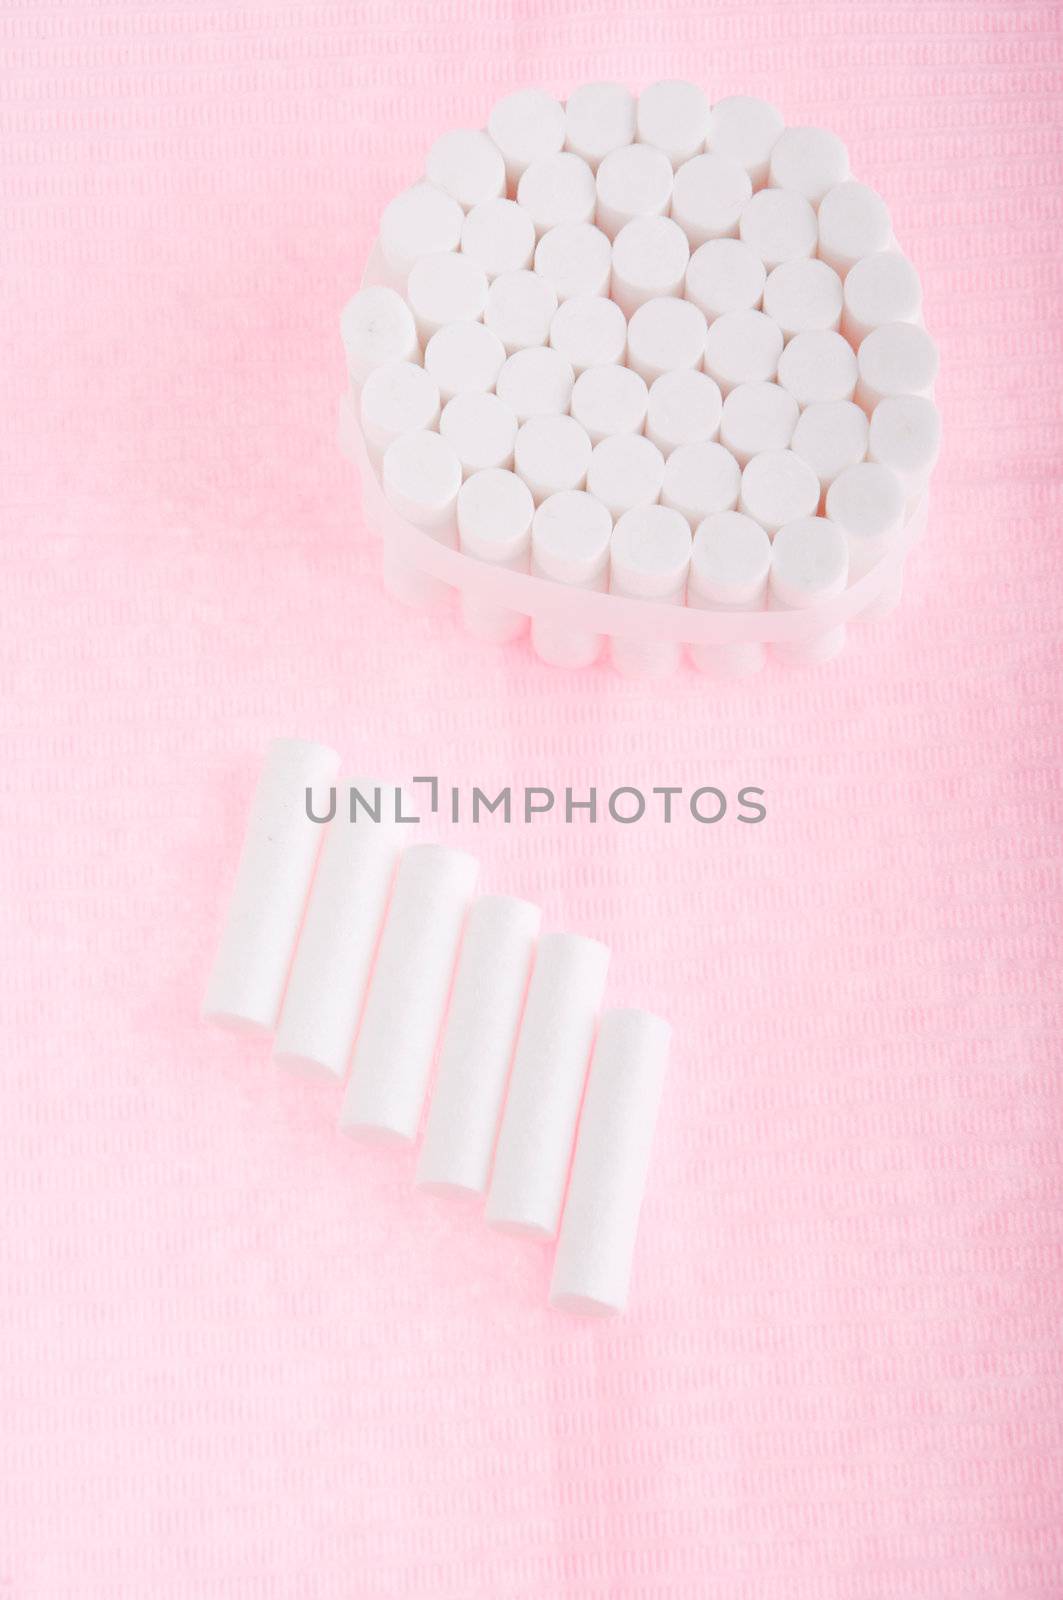 Dental cotton rolls by luissantos84